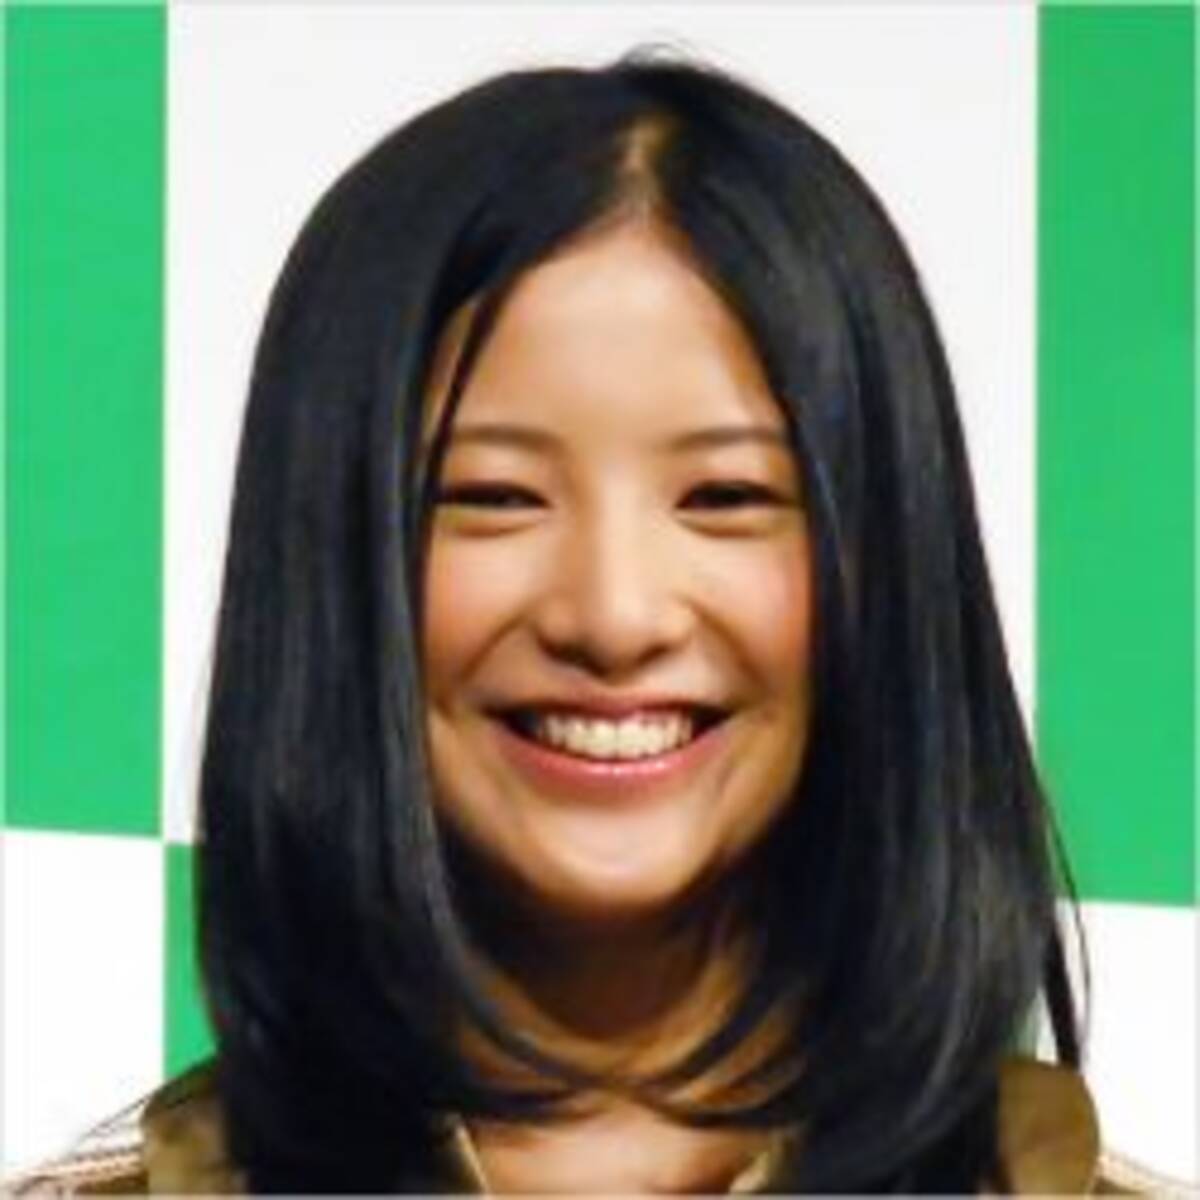 吉高由里子 結婚を匂わせる意味深ツイートが ただのドラマ宣伝 で非難轟々 16年9月8日 エキサイトニュース